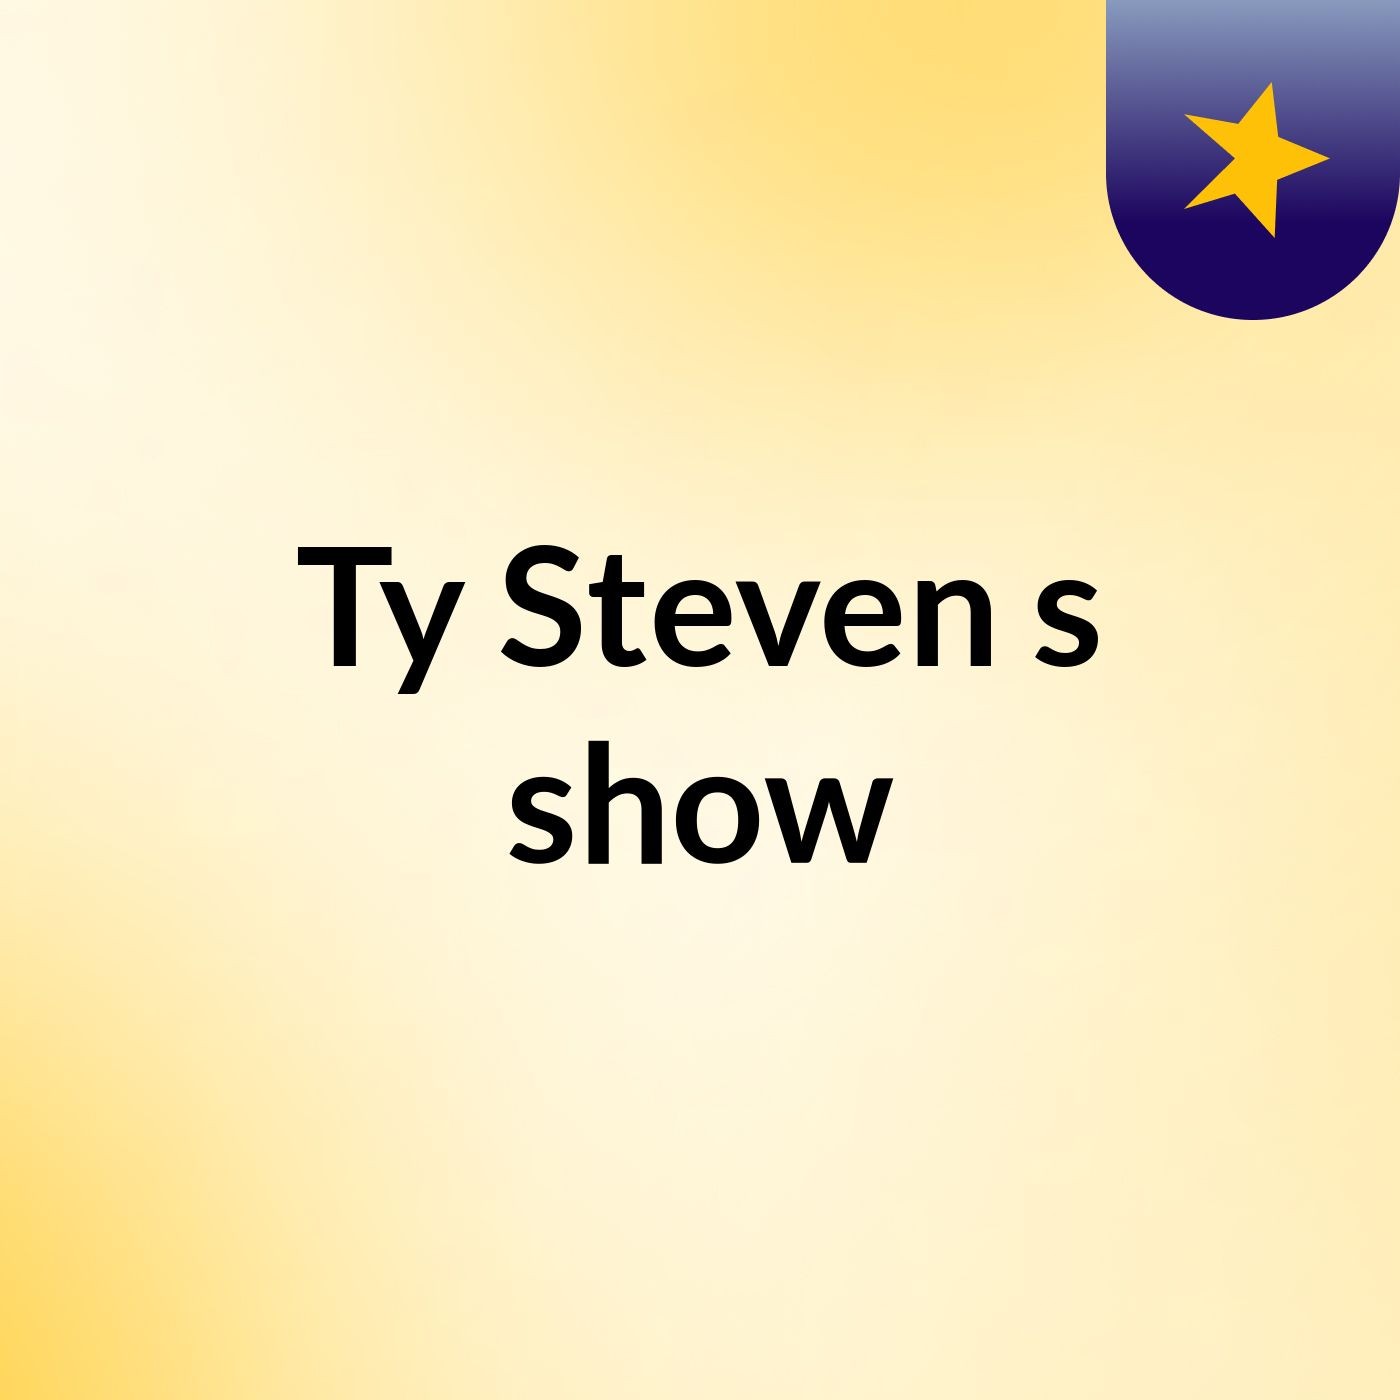 Ty Steven's show